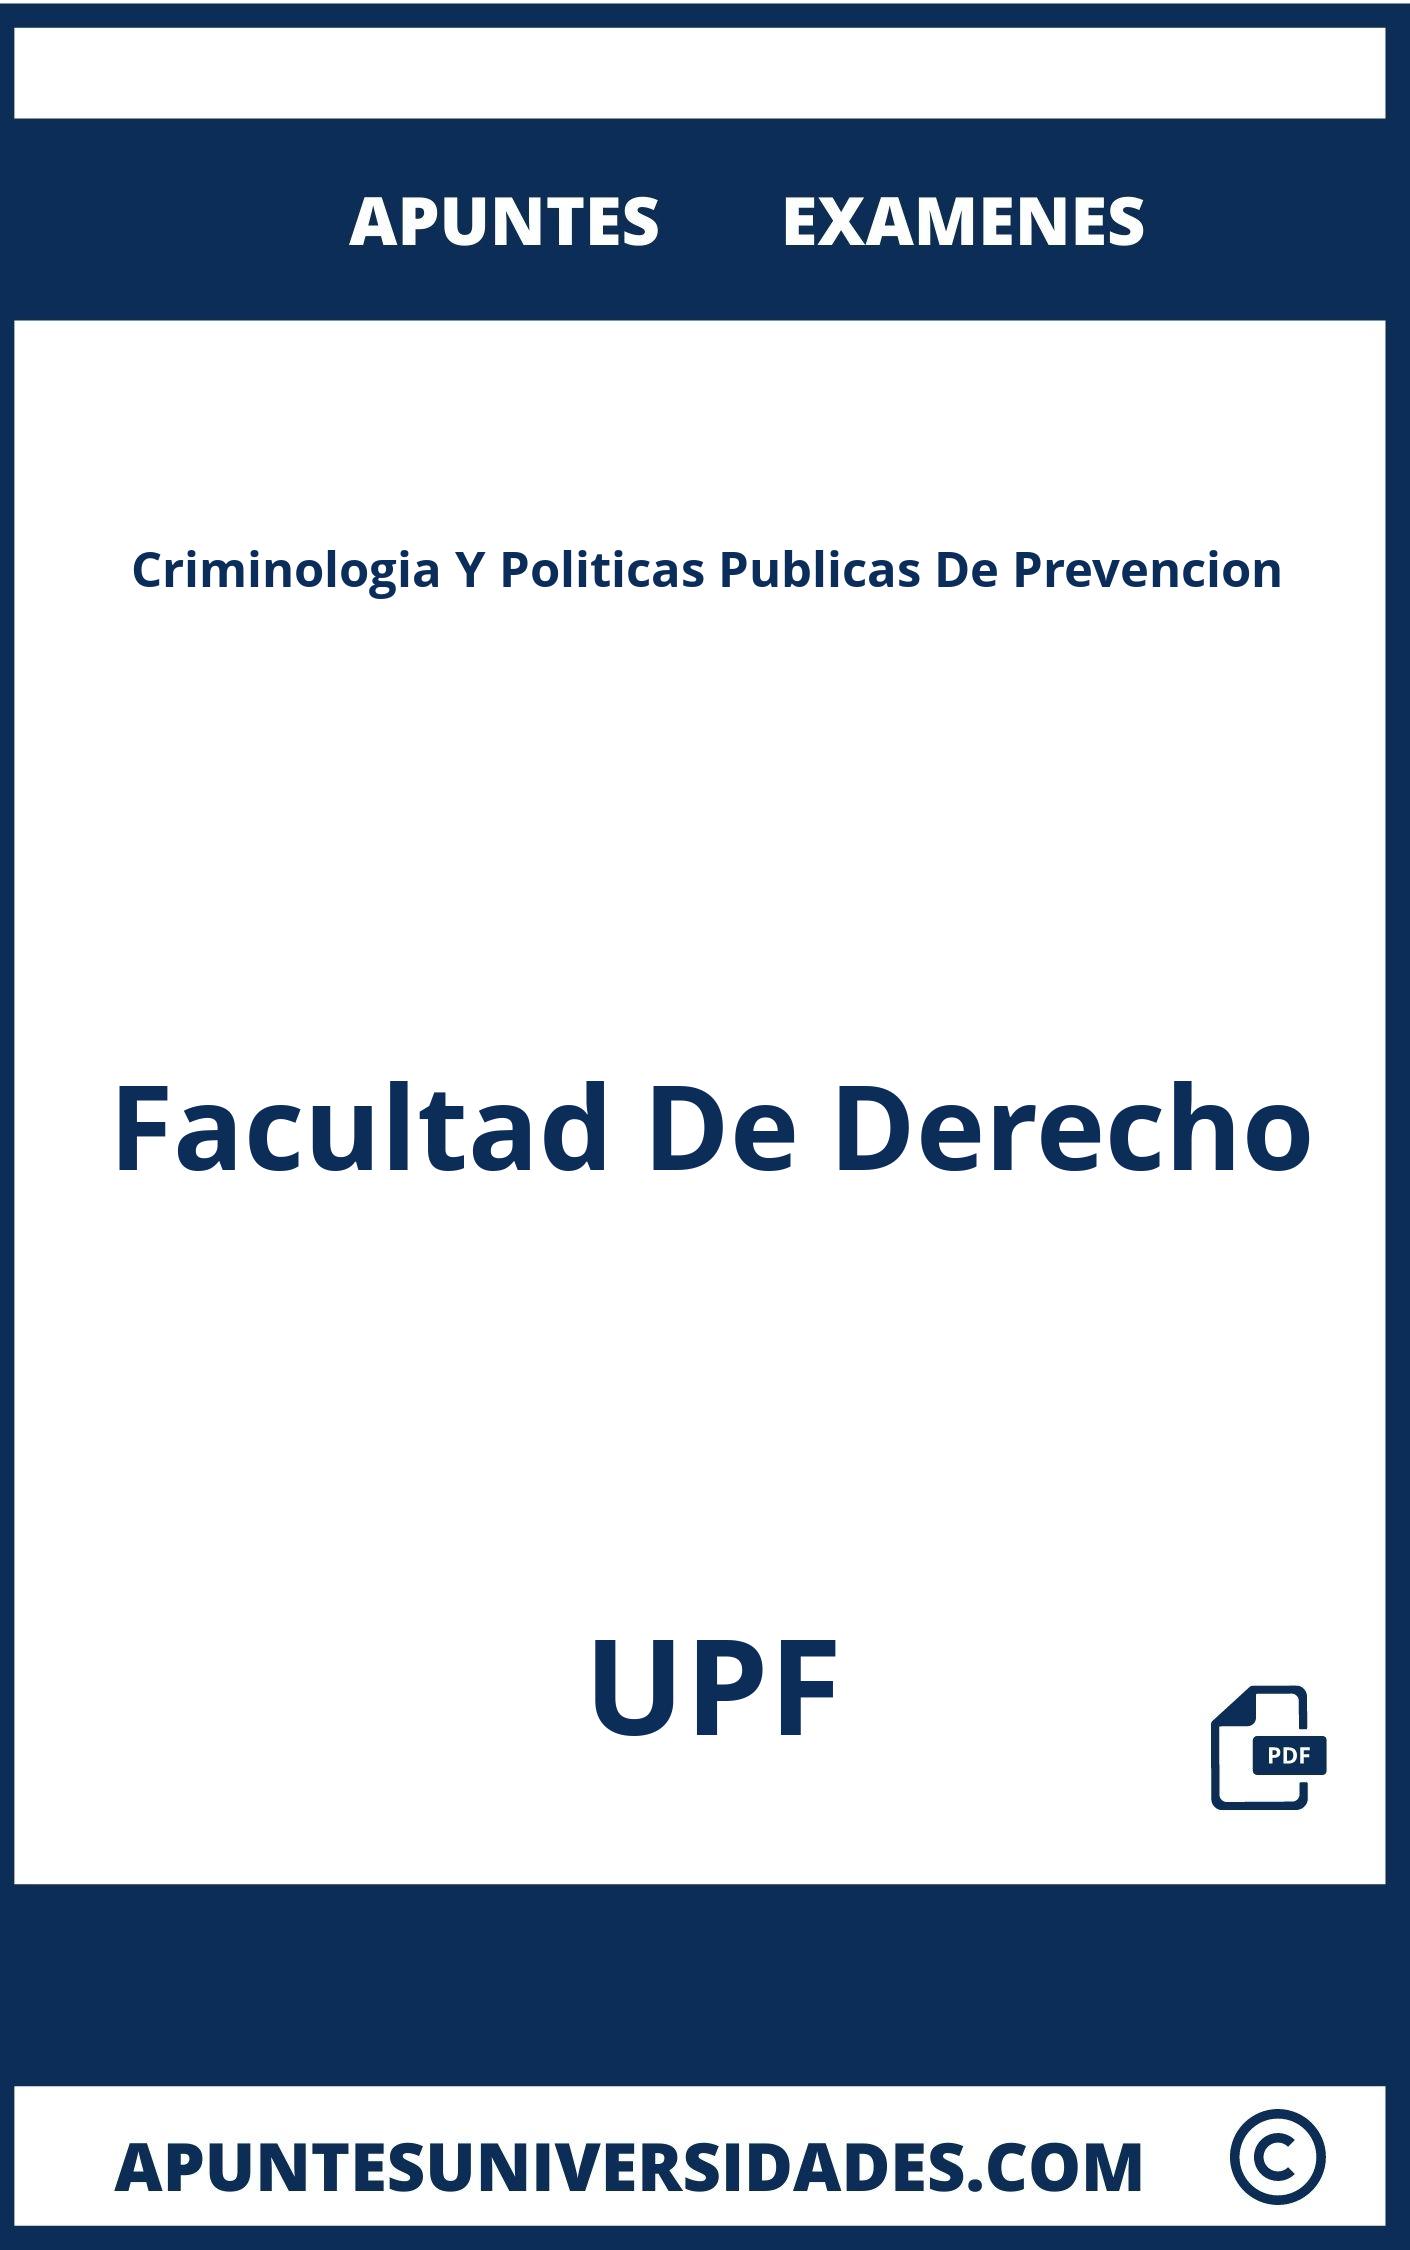 Apuntes Criminologia Y Politicas Publicas De Prevencion UPF y Examenes